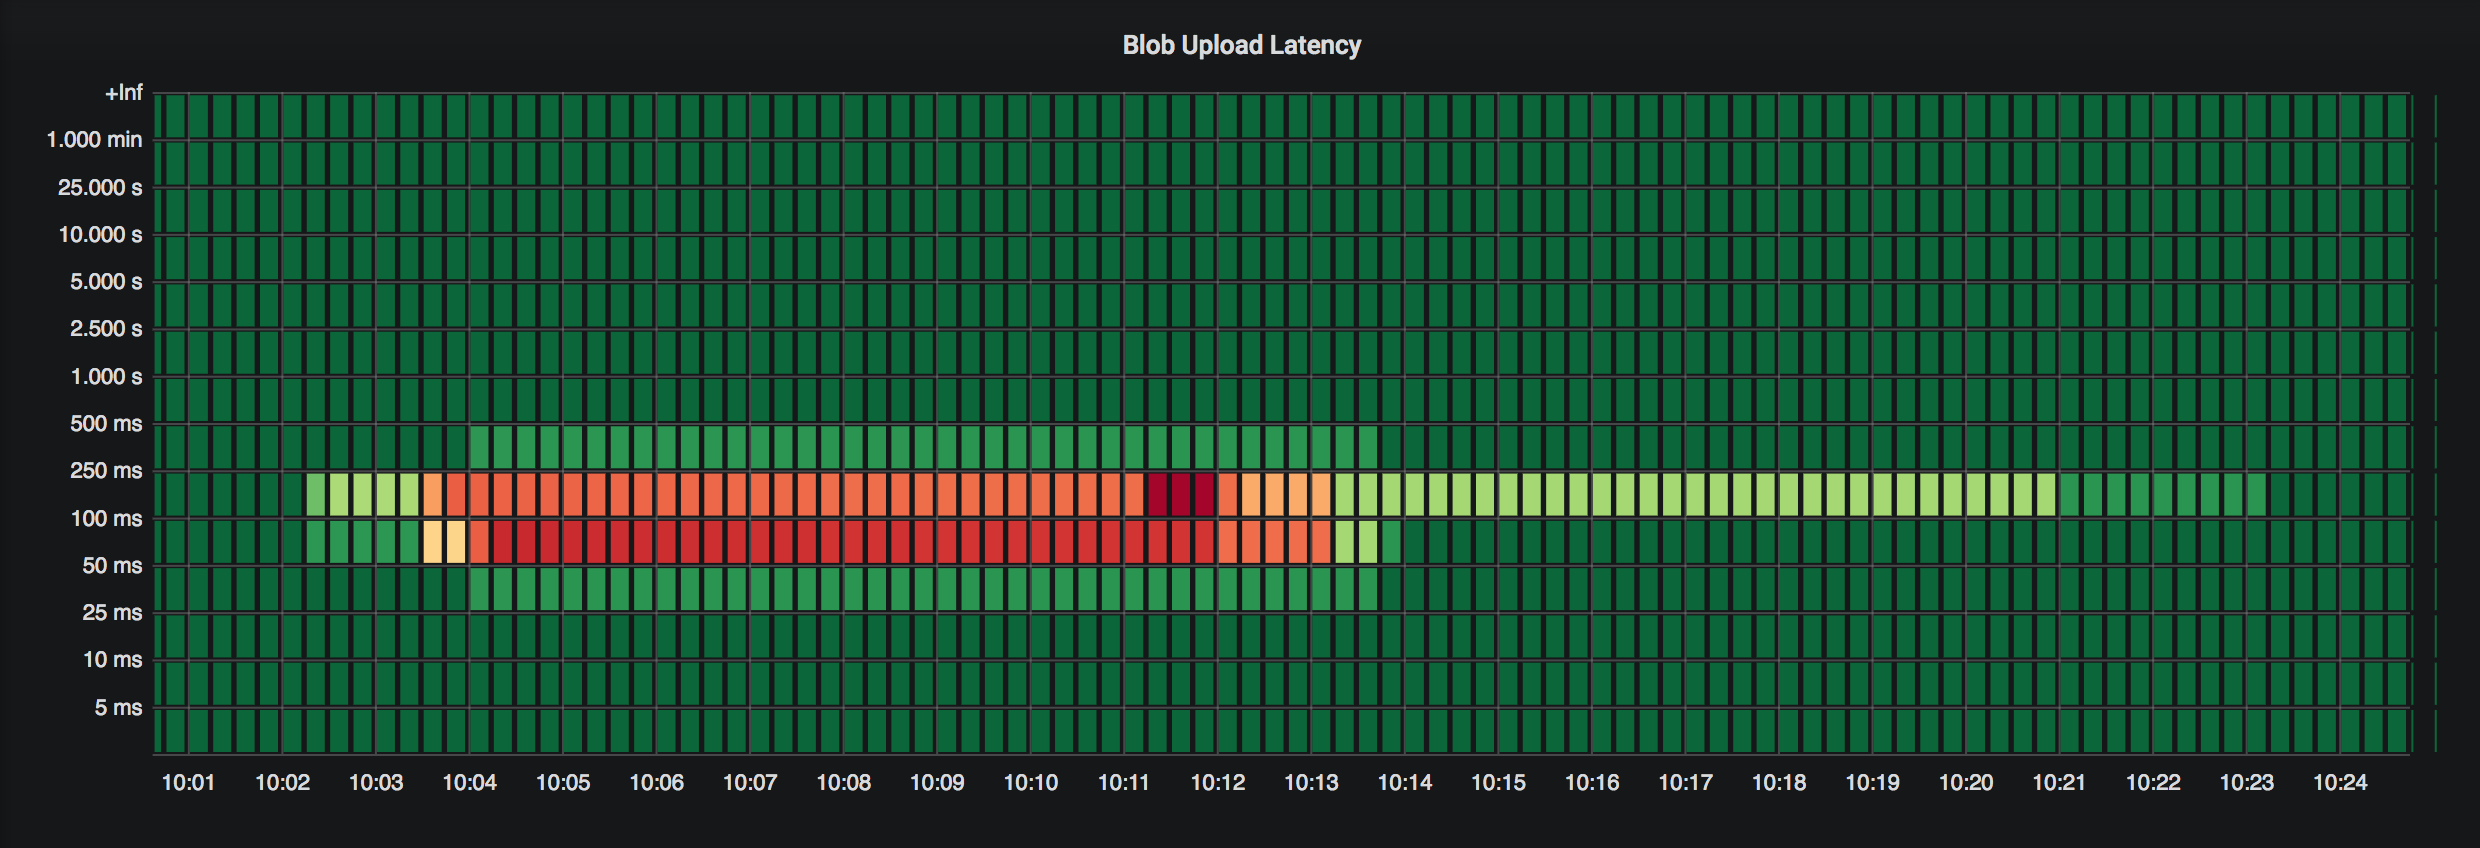 Docker Registry Blob upload latency Heatmap 